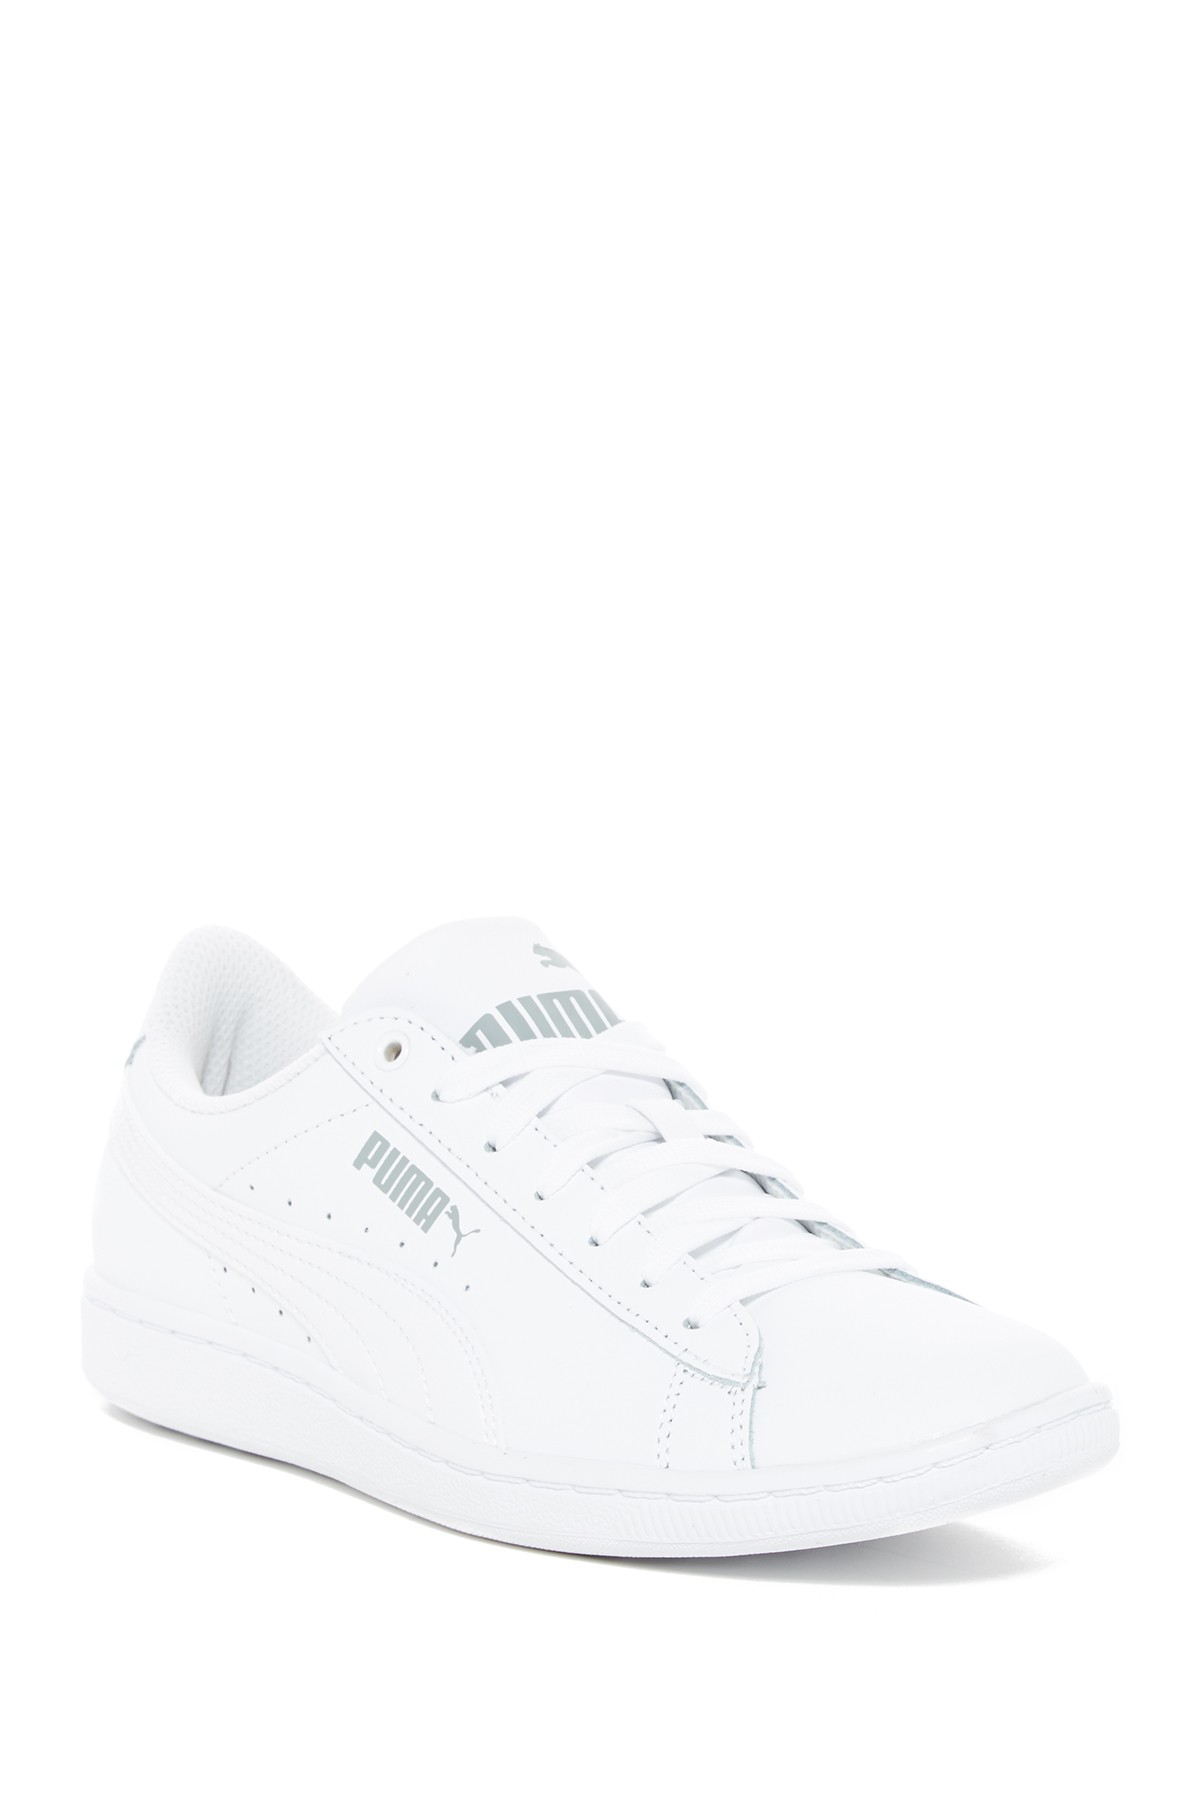 Lyst - Puma Vikky Soft Foam Sneaker in White